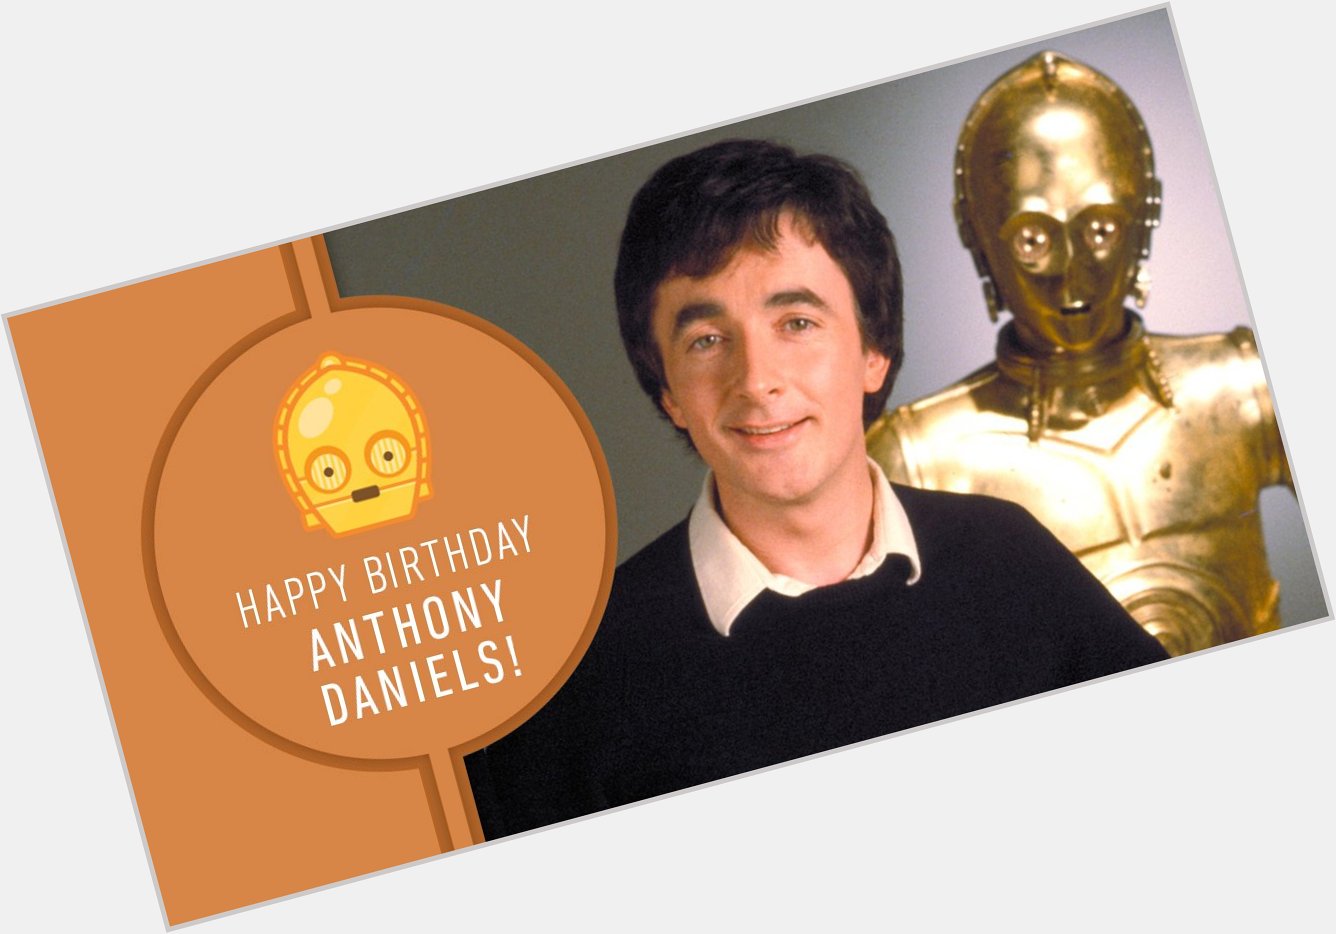  >> Happy Birthday, Anthony Daniels (C-3PO)!  